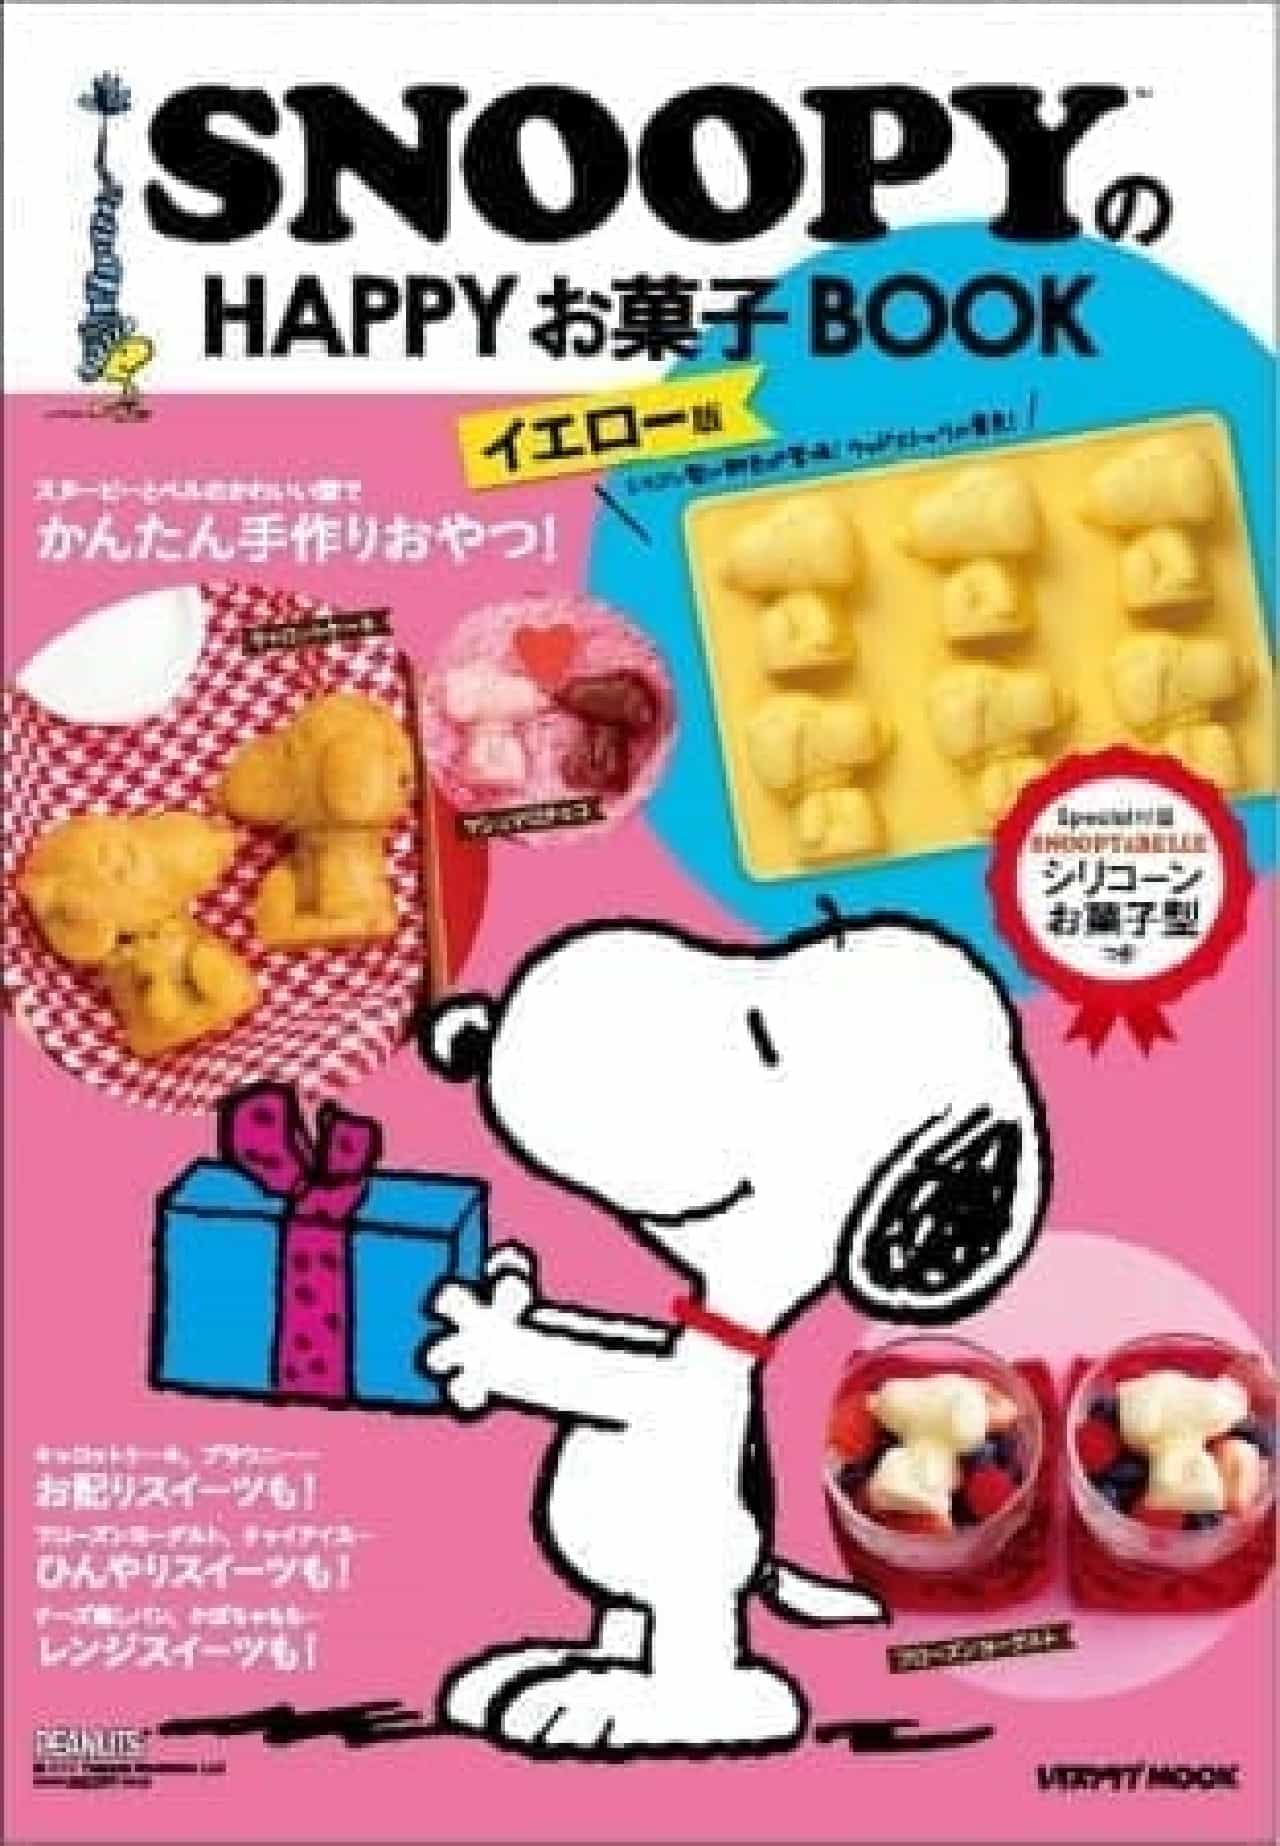 スヌーピーの型で手作りスイーツを可愛く Snoopyのhappyお菓子book イエロー版 発売 えんウチ